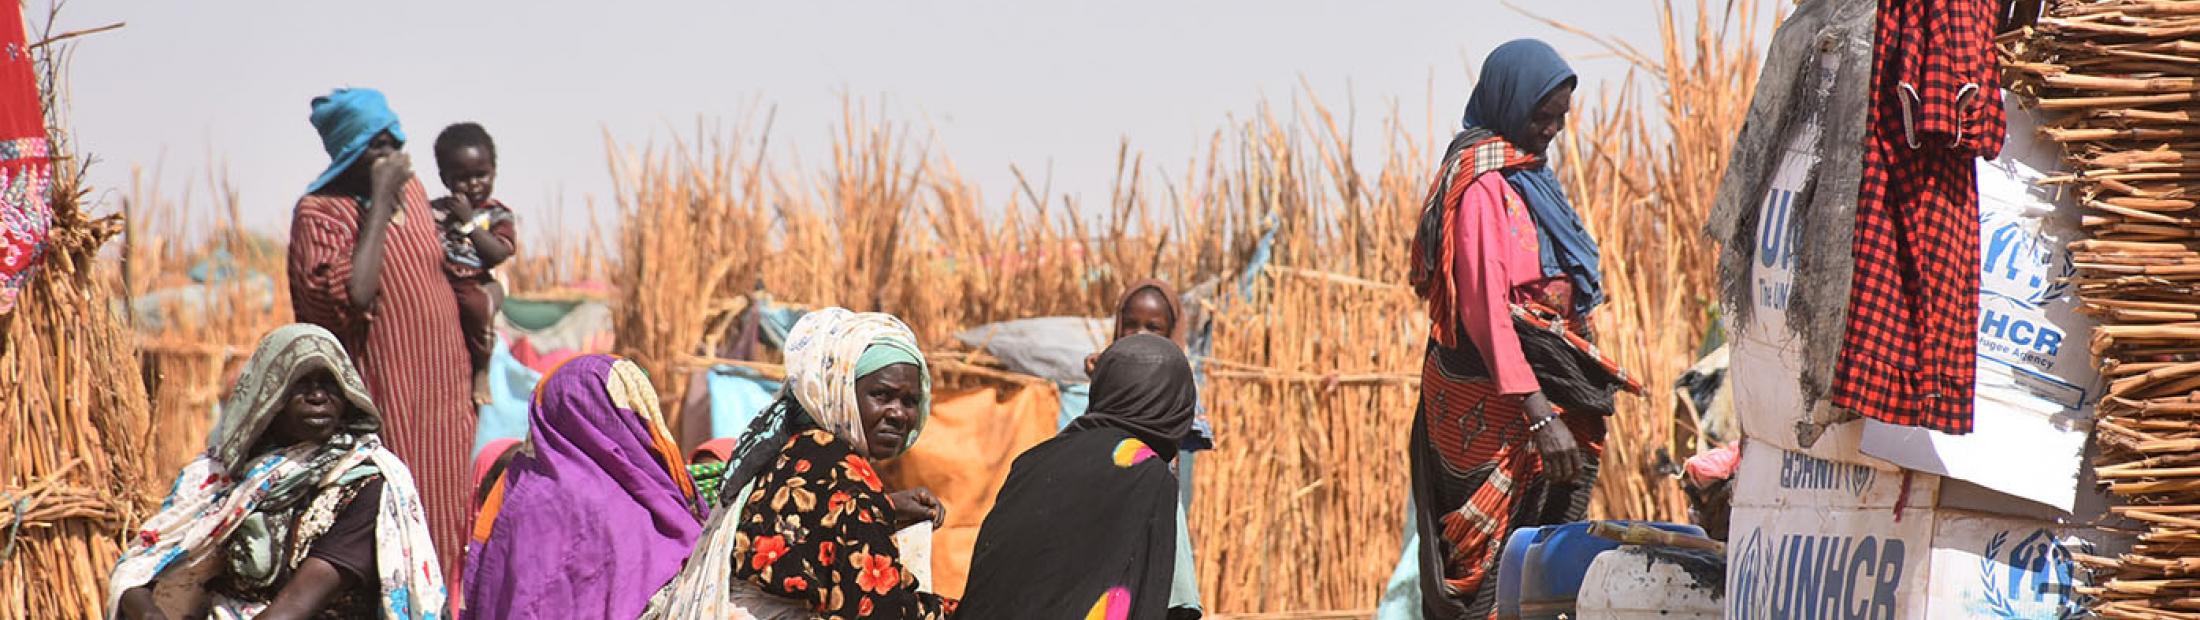 Fundación Caja Navarra con la población refugiada sudanesa en el este de Chad